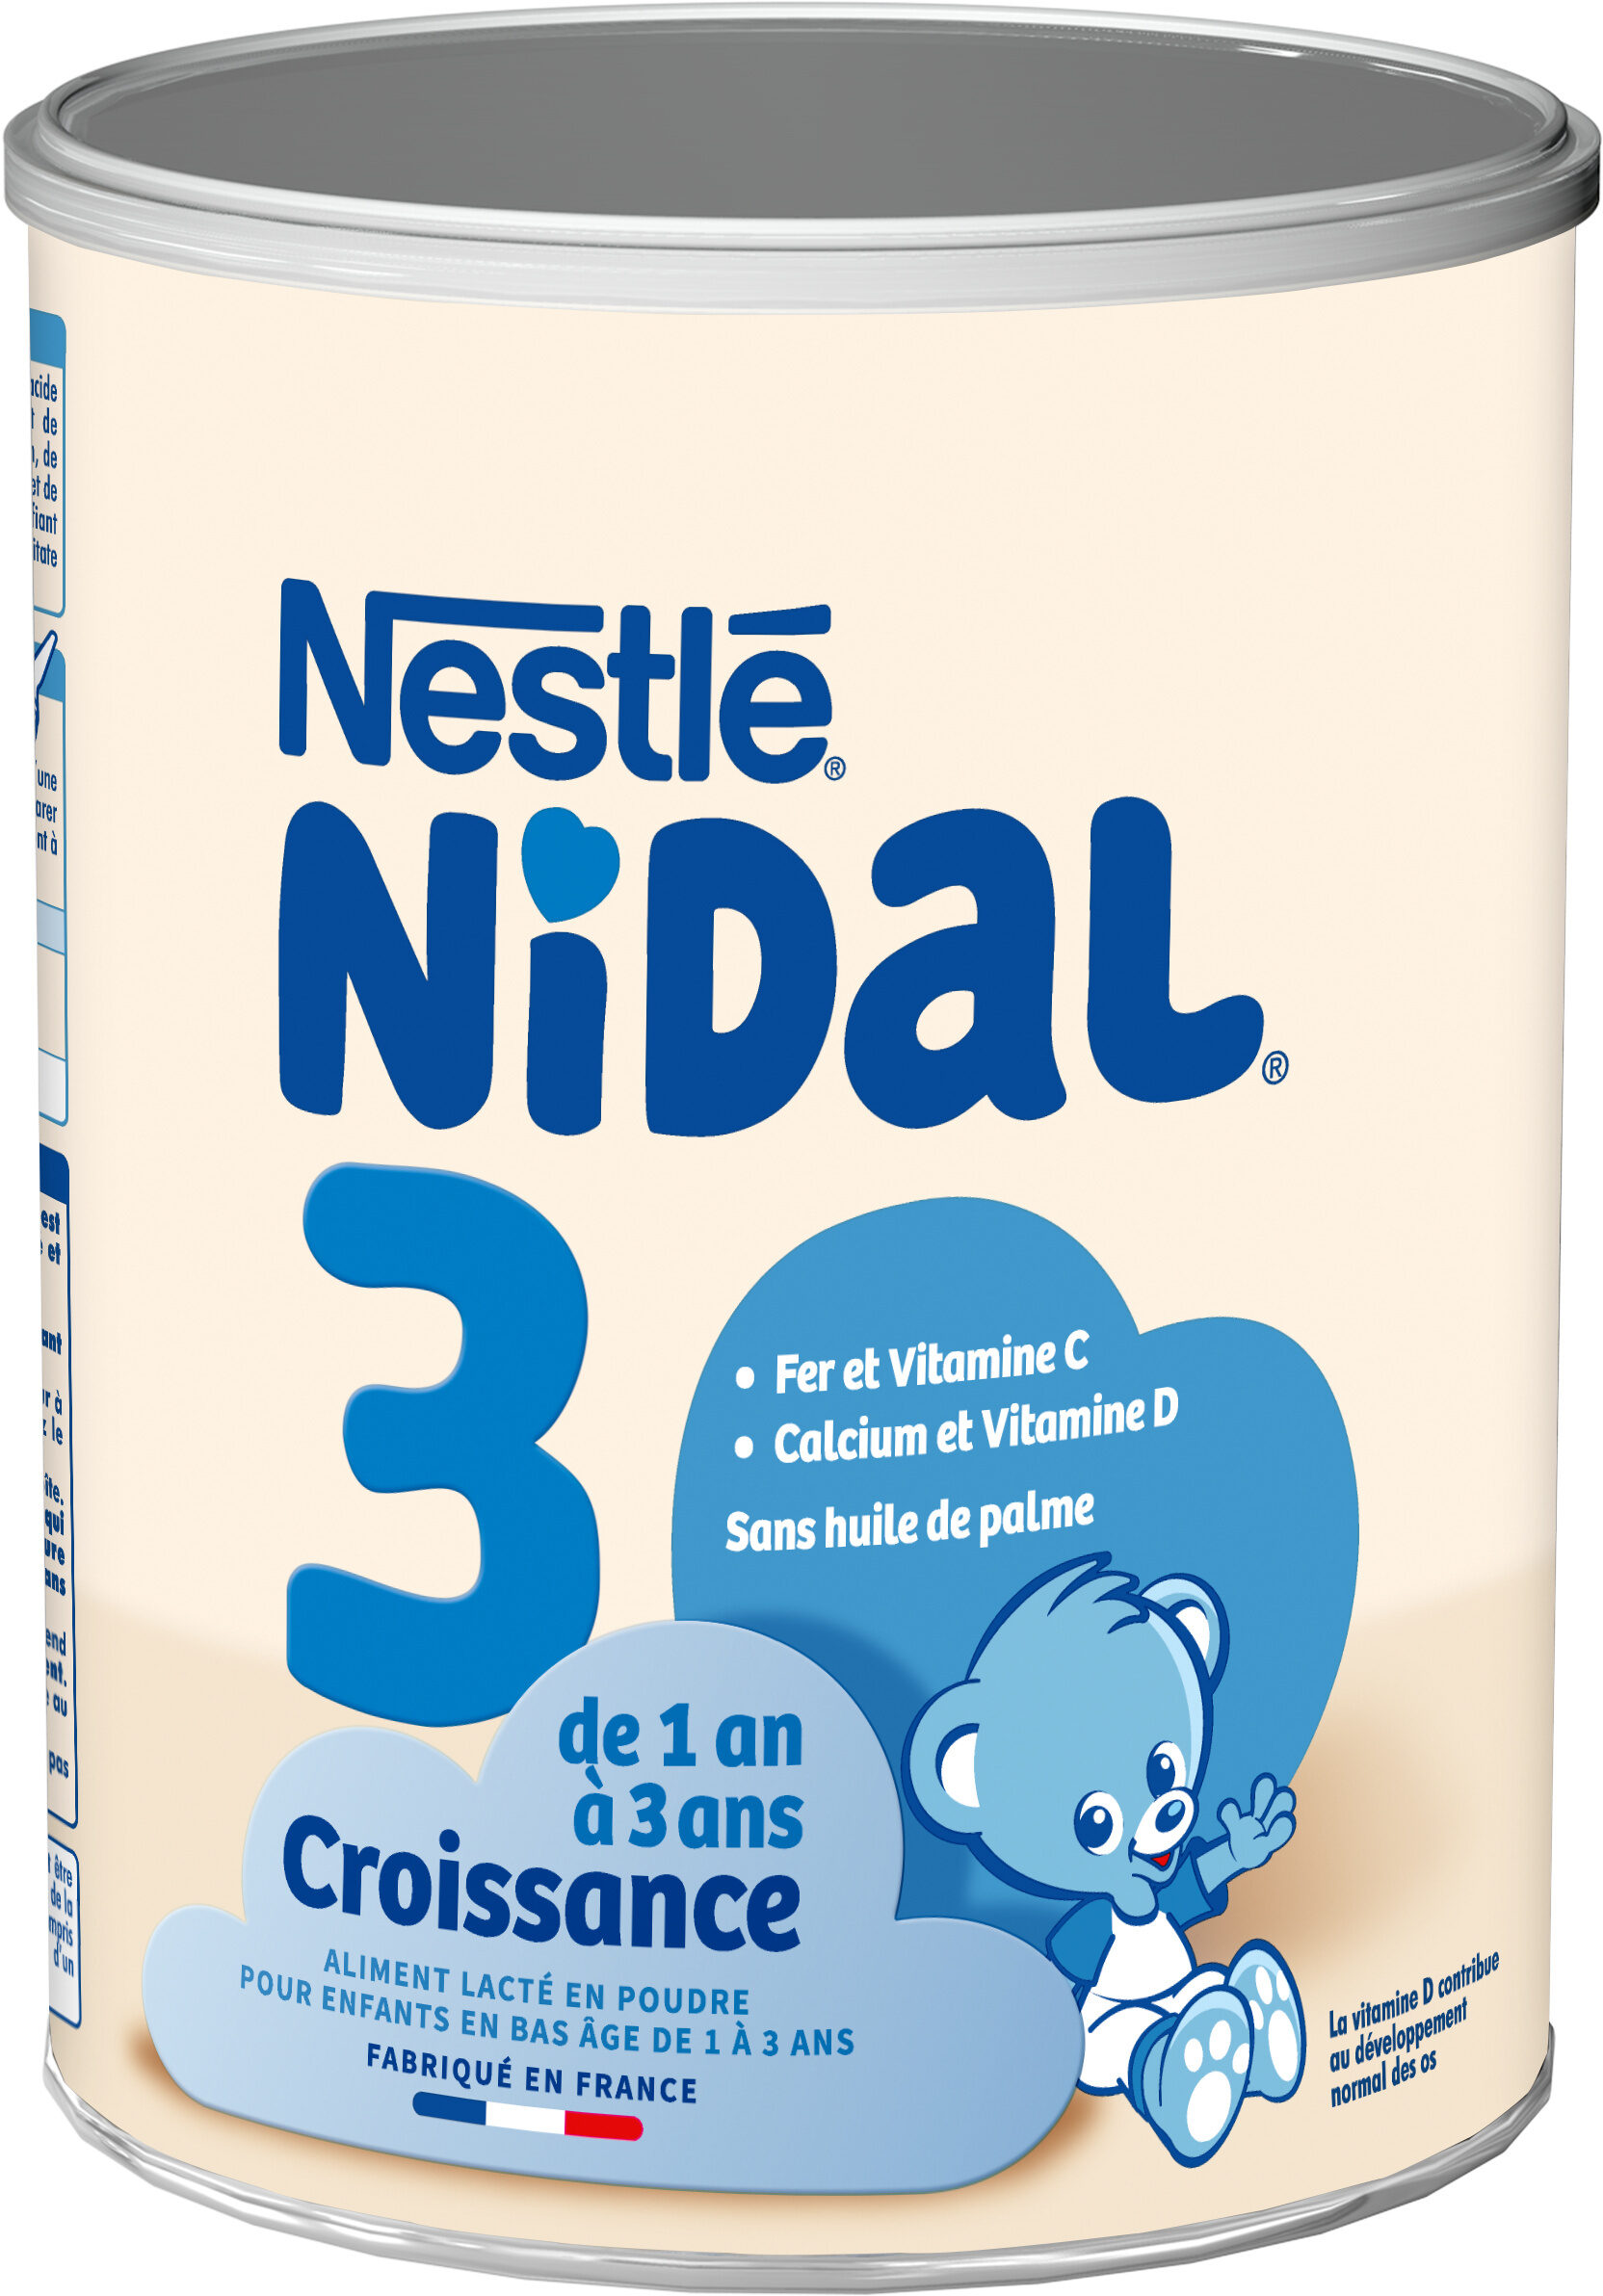 NIDAL 3 Croissance de 1 à 3 ans - Produit - fr